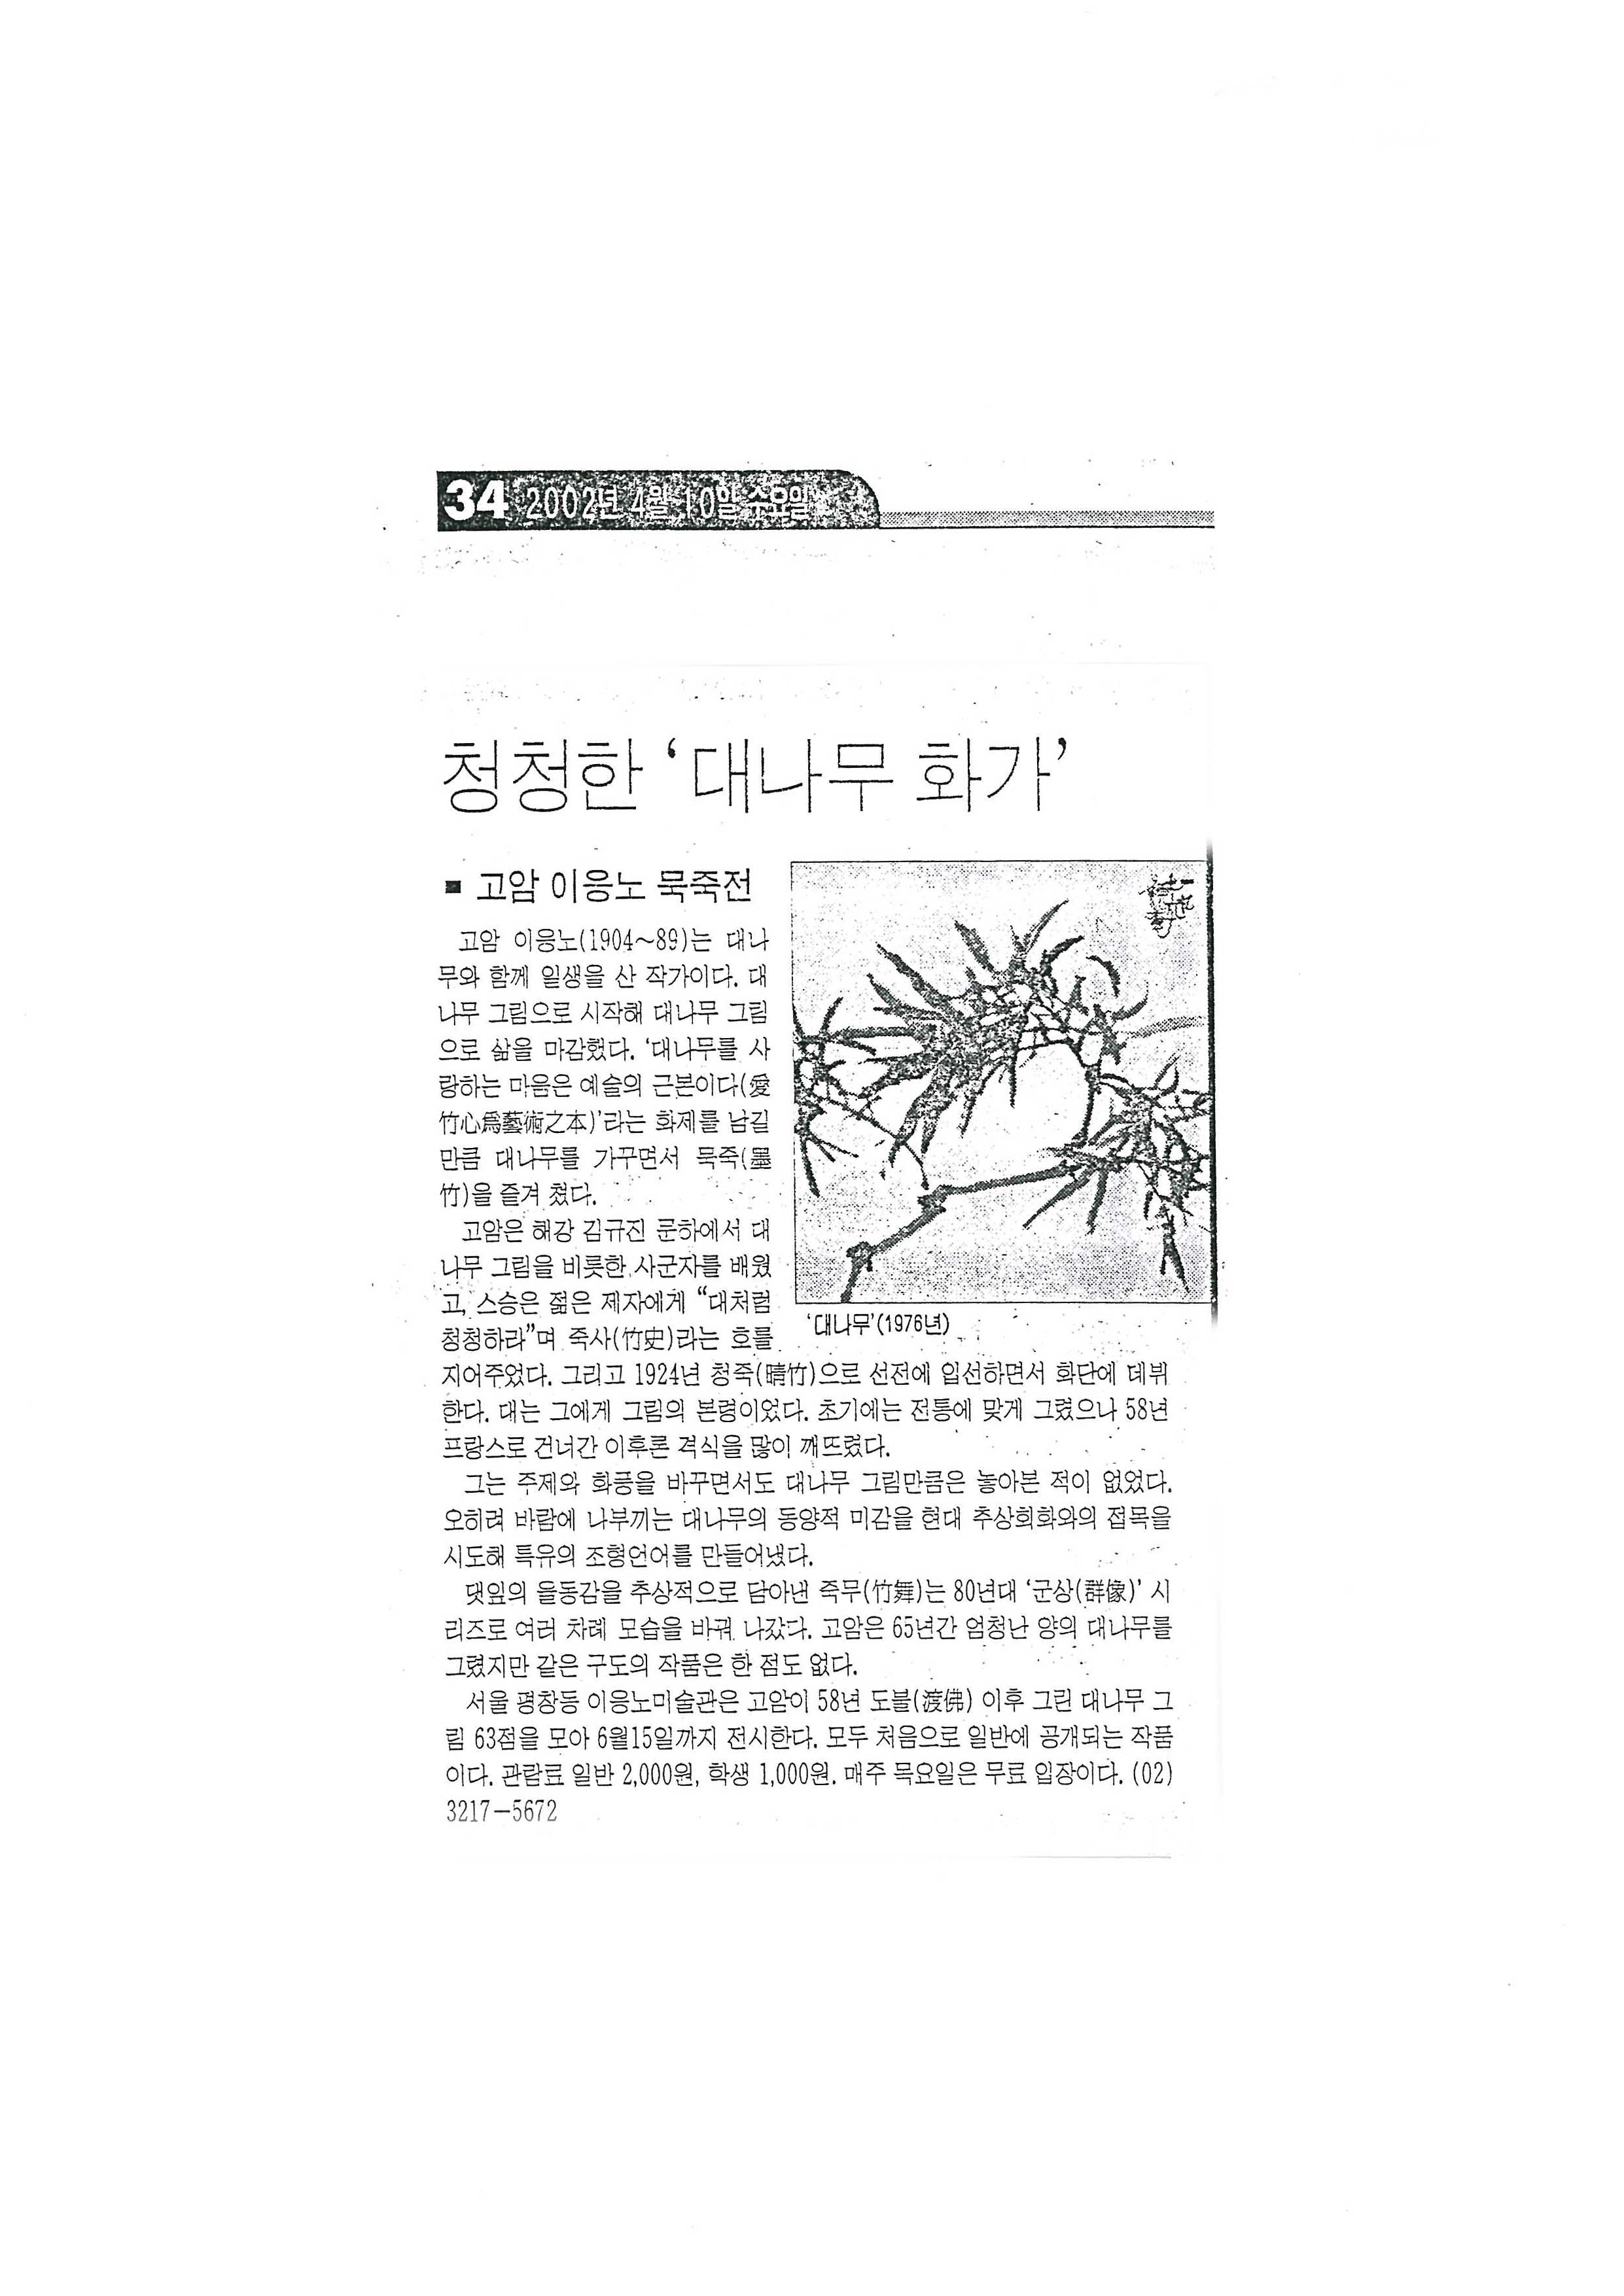  「청청한 '대나무 화가' 고암 이응노 묵죽전」, 『경향신문』 